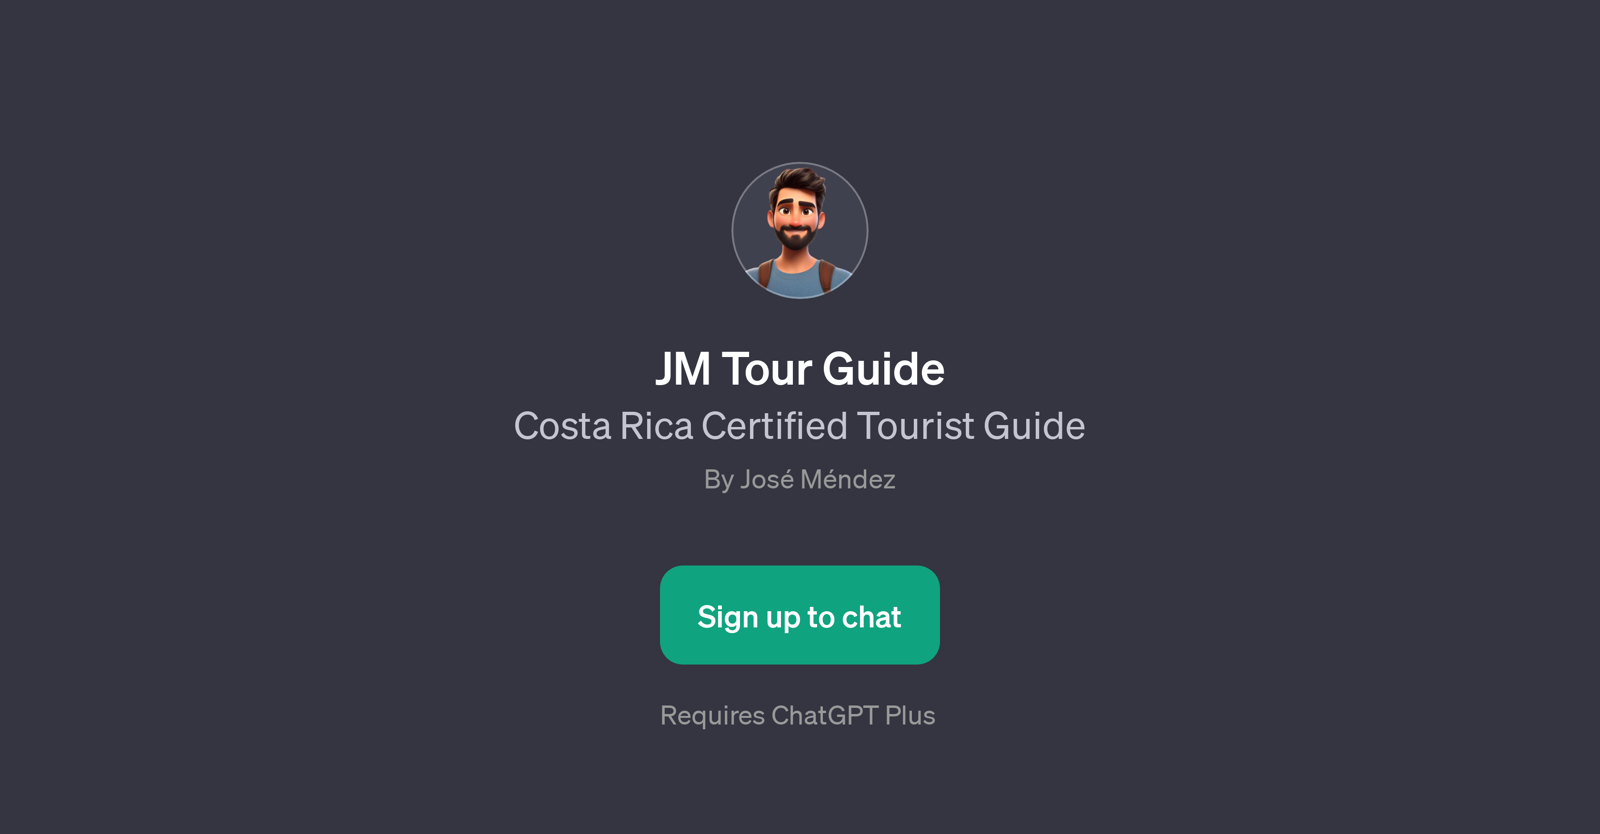 JM Tour Guide website